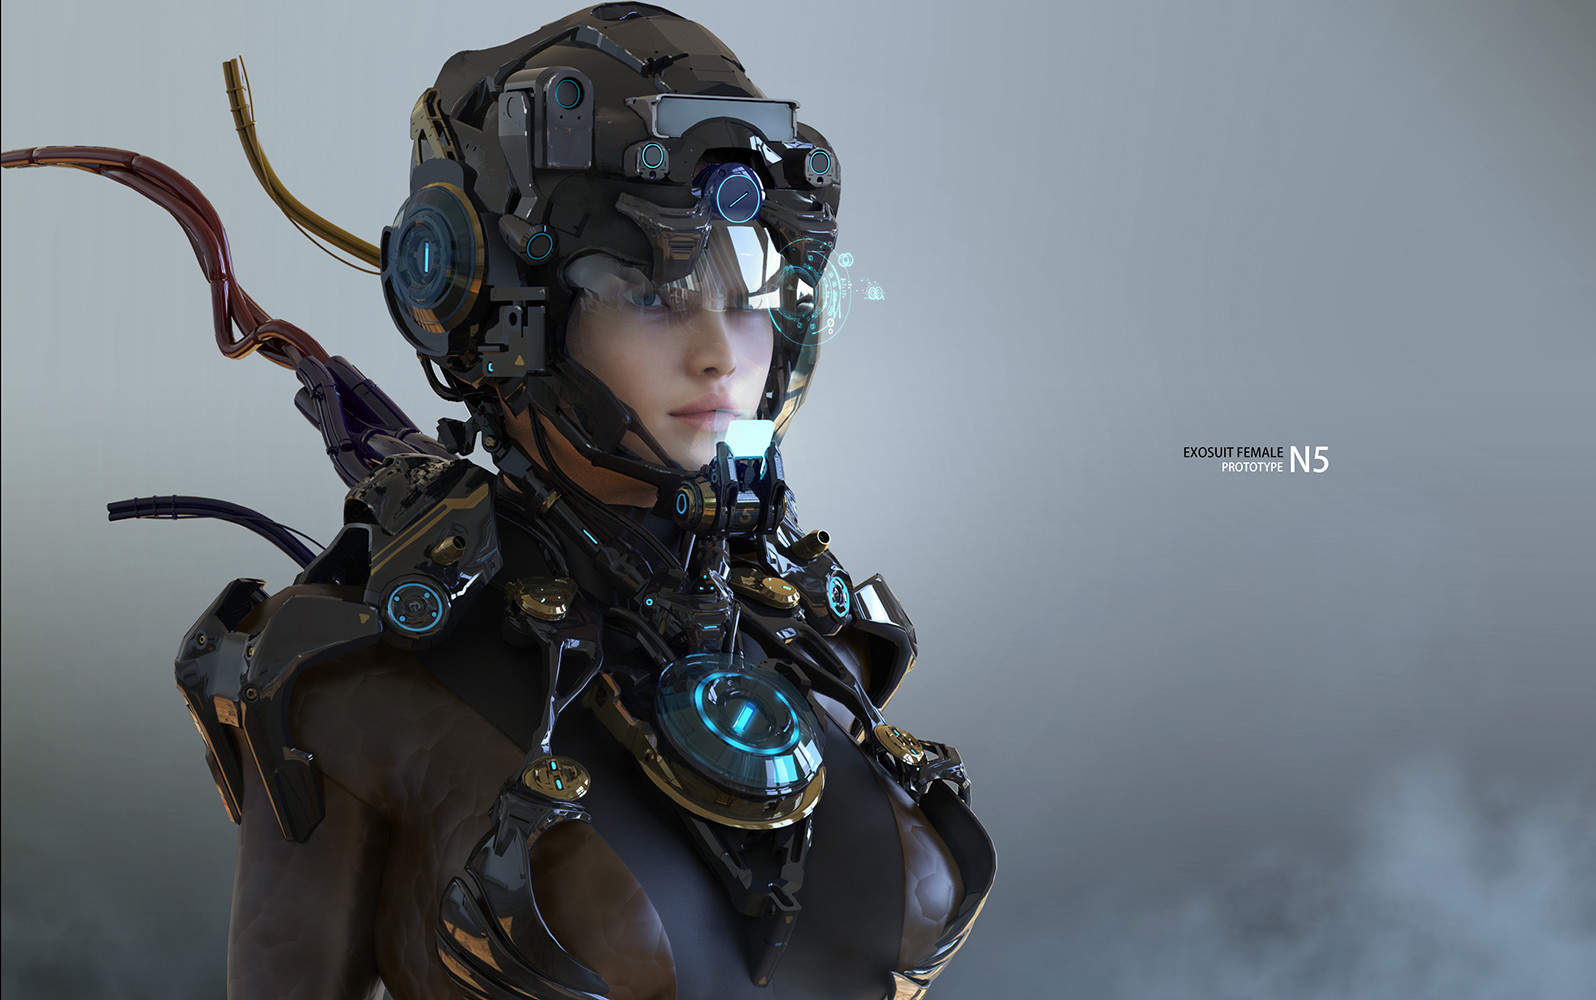 General 1596x1000 digital art women fantasy girl futuristic CGI cyborg robot